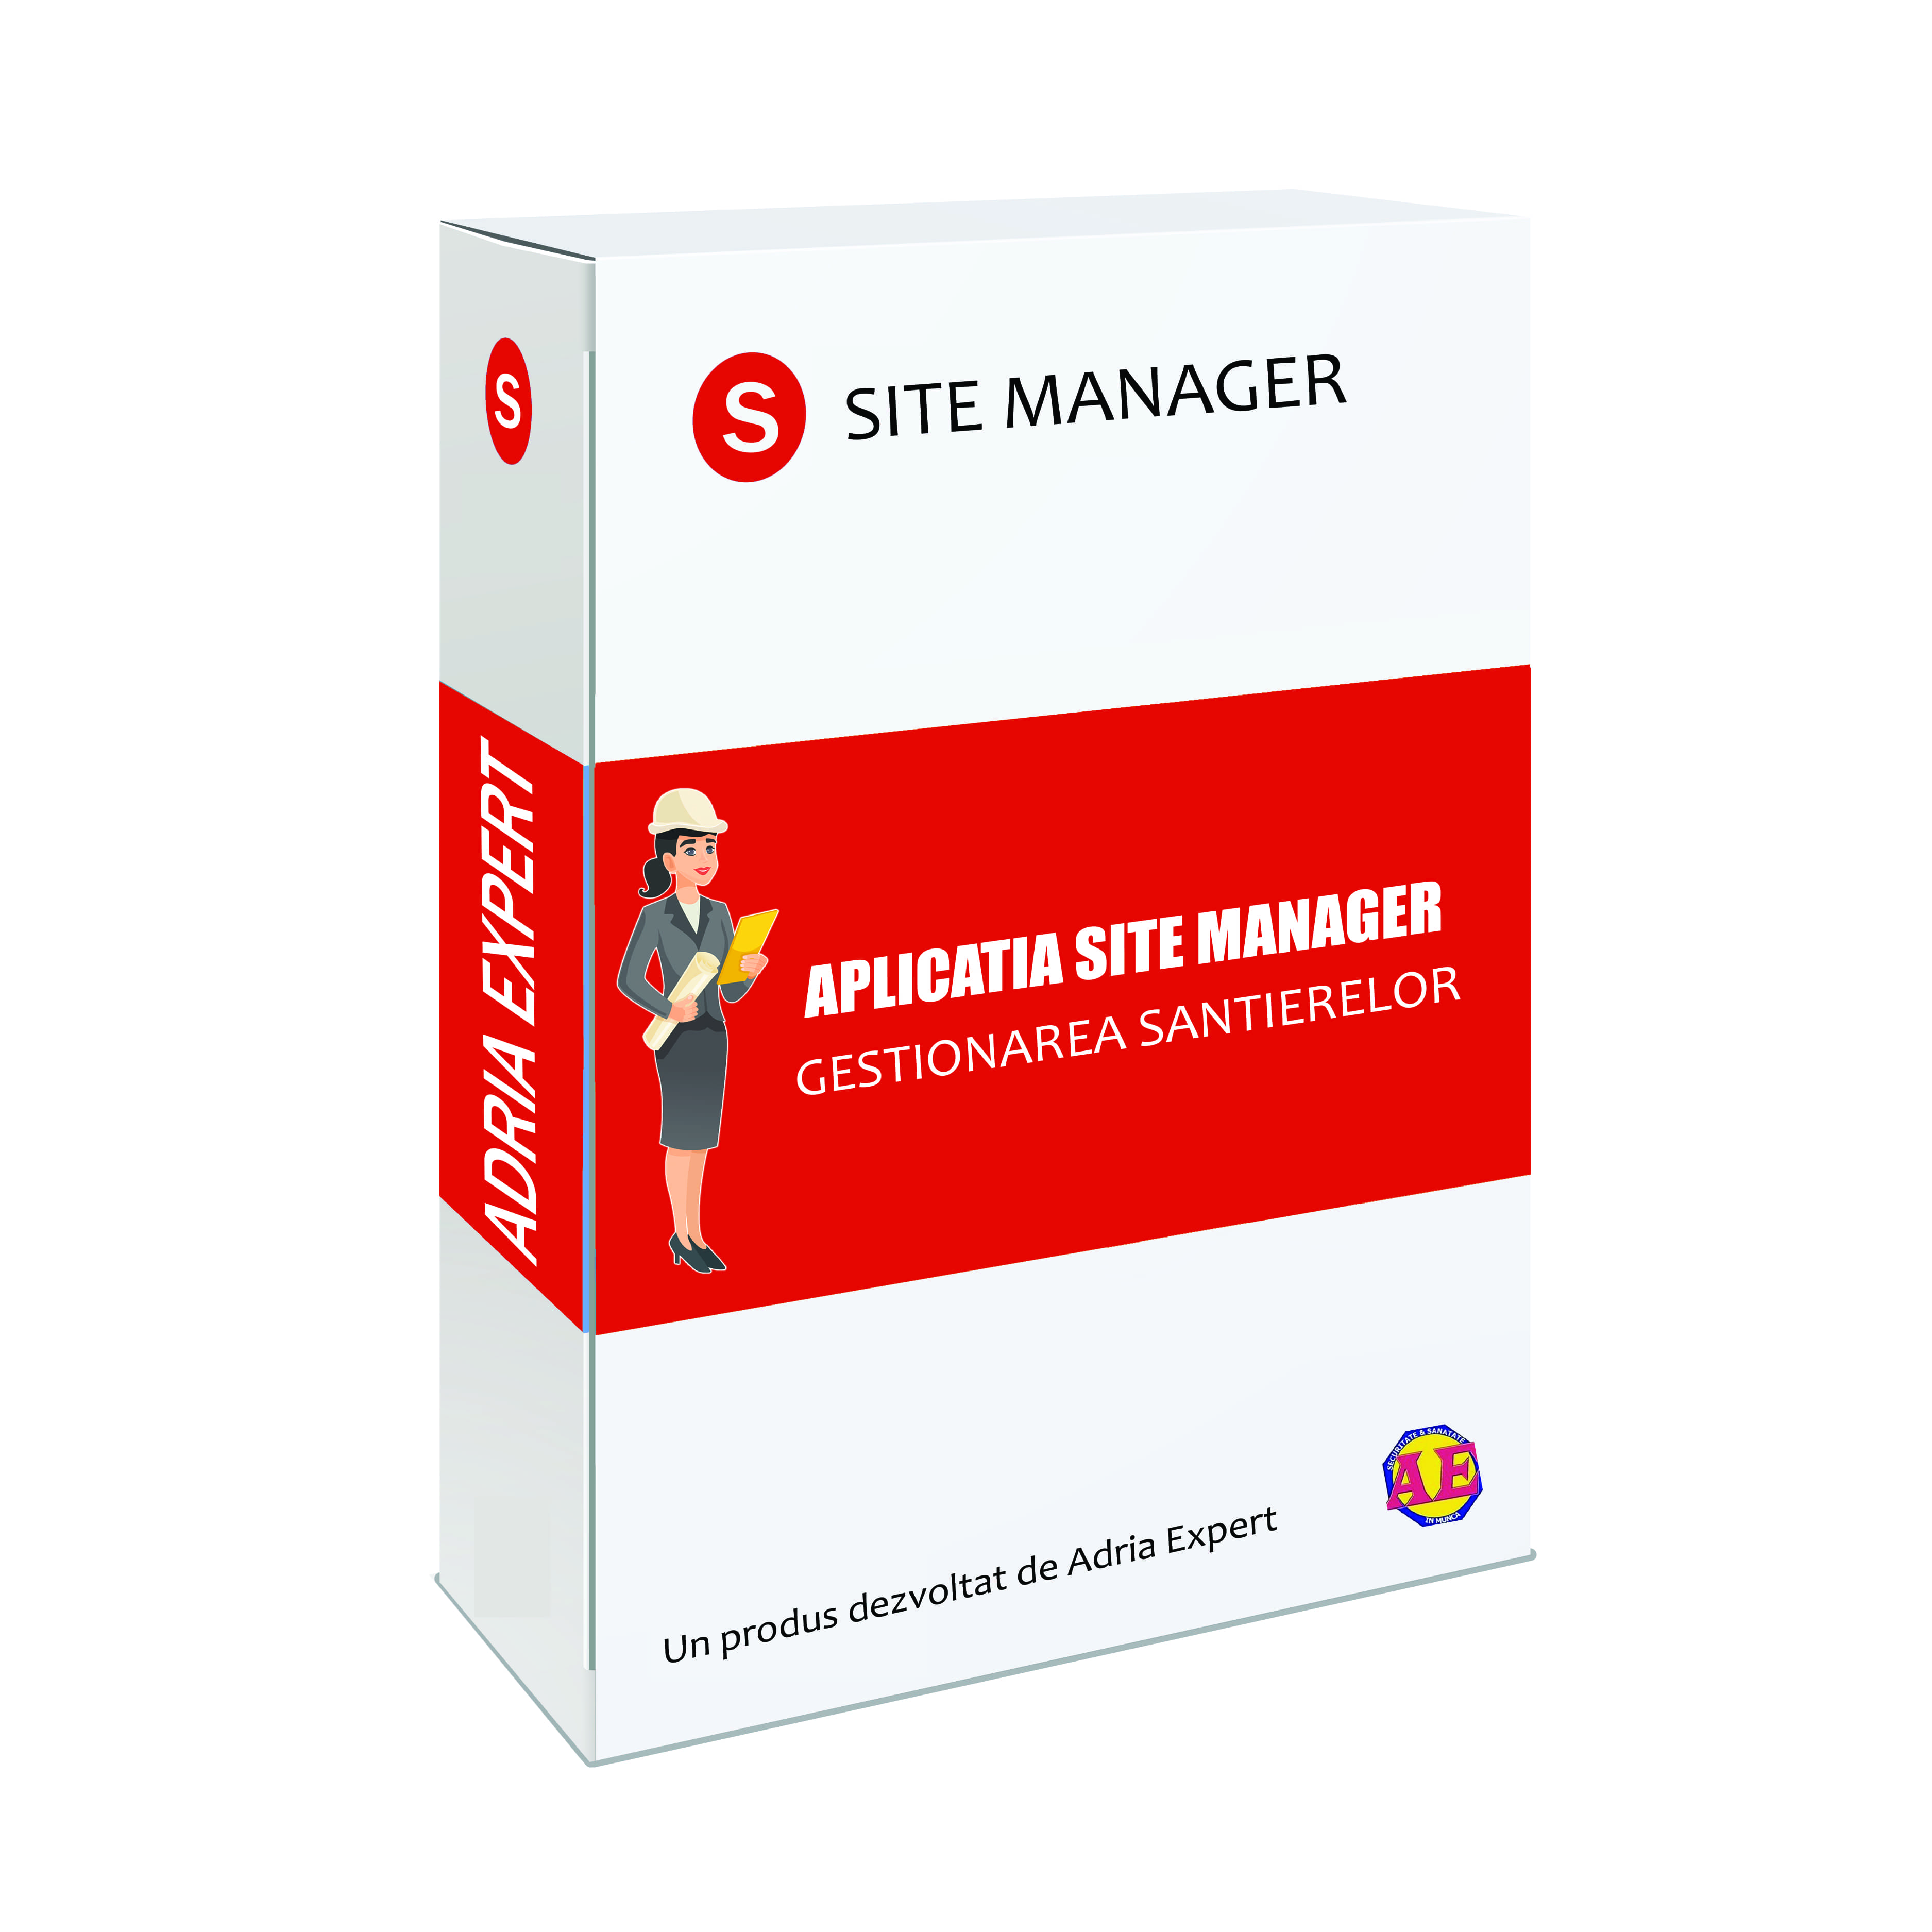 Aplicatia Site Manager - Gestionarea Santierelor